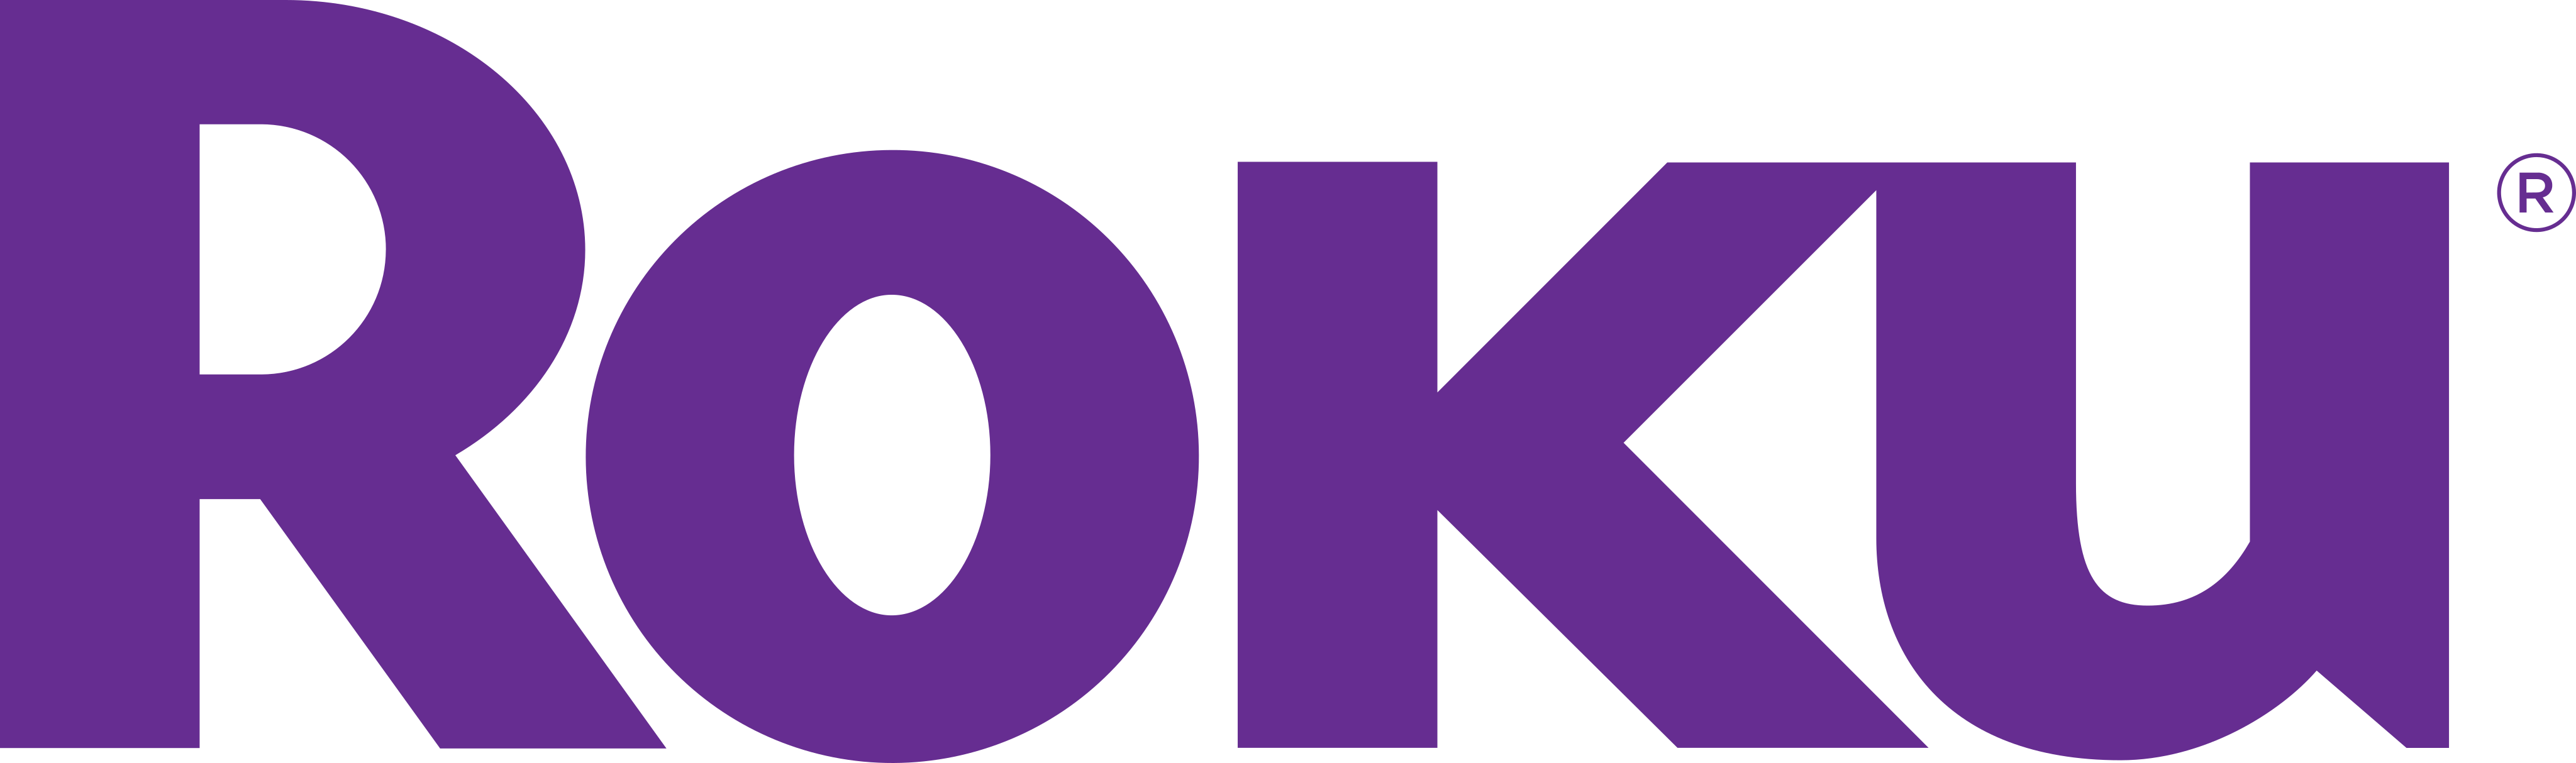 roku logo - Roku Logo